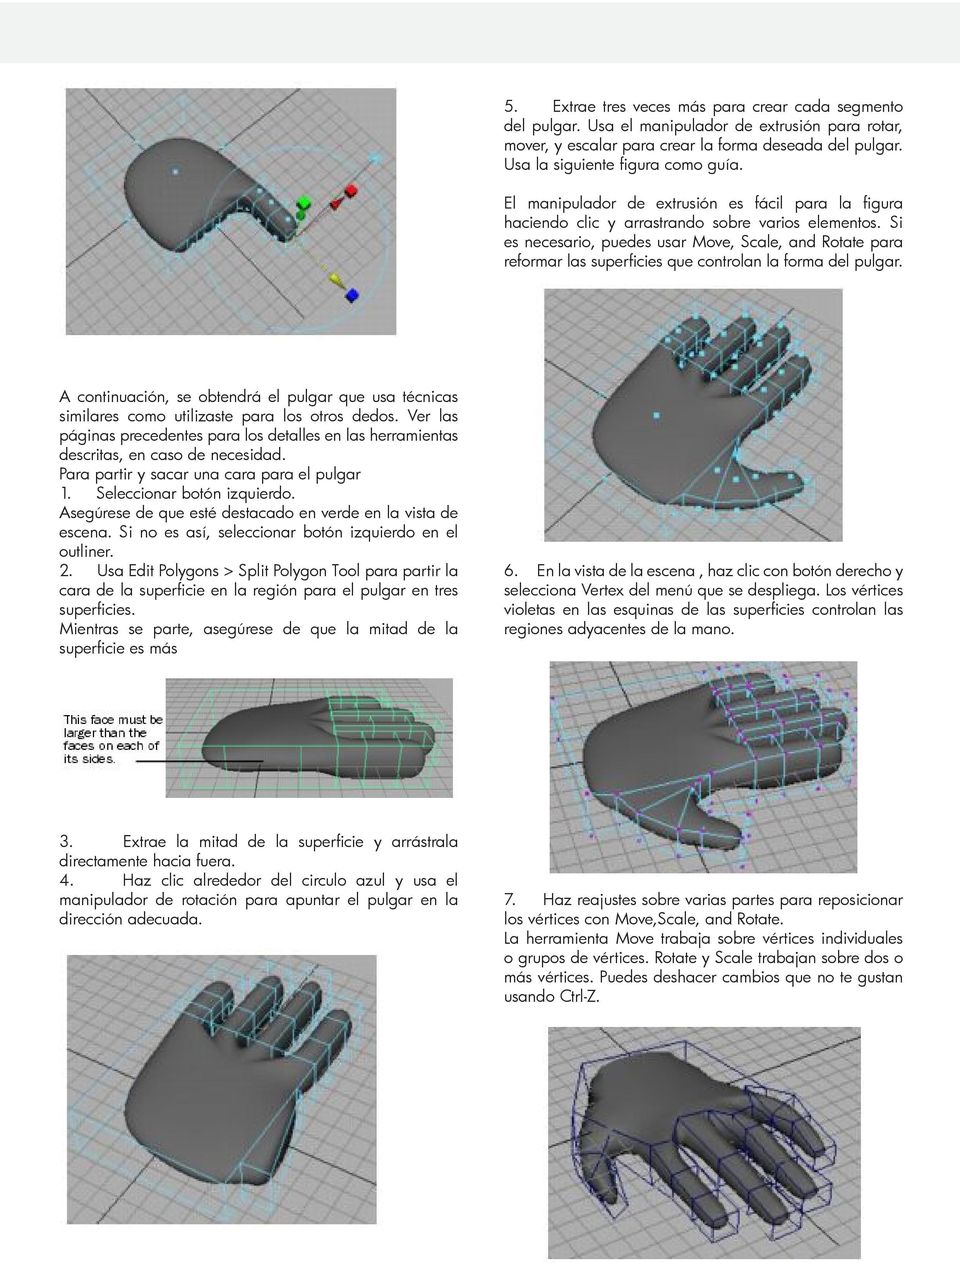 Si es necesario, puedes usar Move, Scale, and Rotate para reformar las superficies que controlan la forma del pulgar.